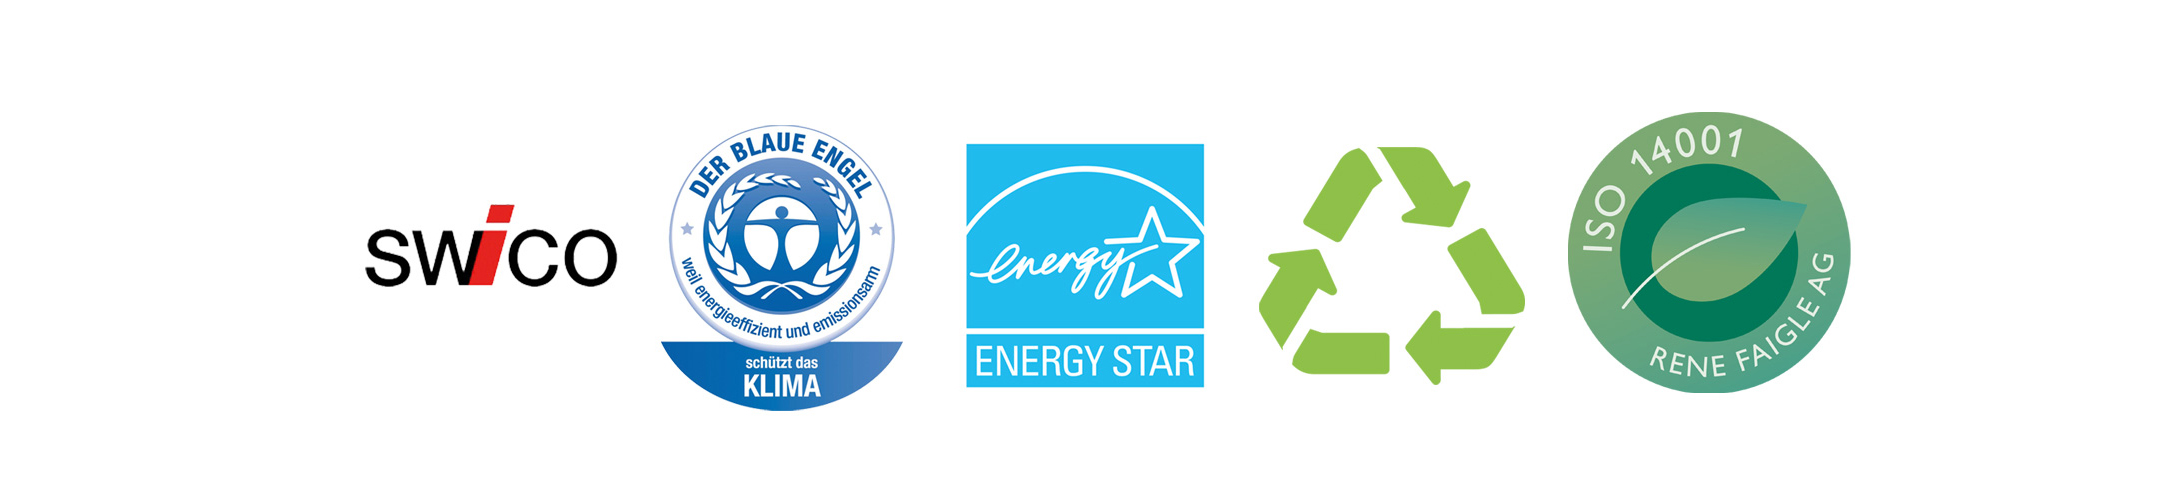 swico-association-économique-TIC-et-branche-en-ligne-l'ange-bleu-label-pour-la-protection-du-climat-energy-star-label-environnemental-pour-imprimantes-économes-en-recycla